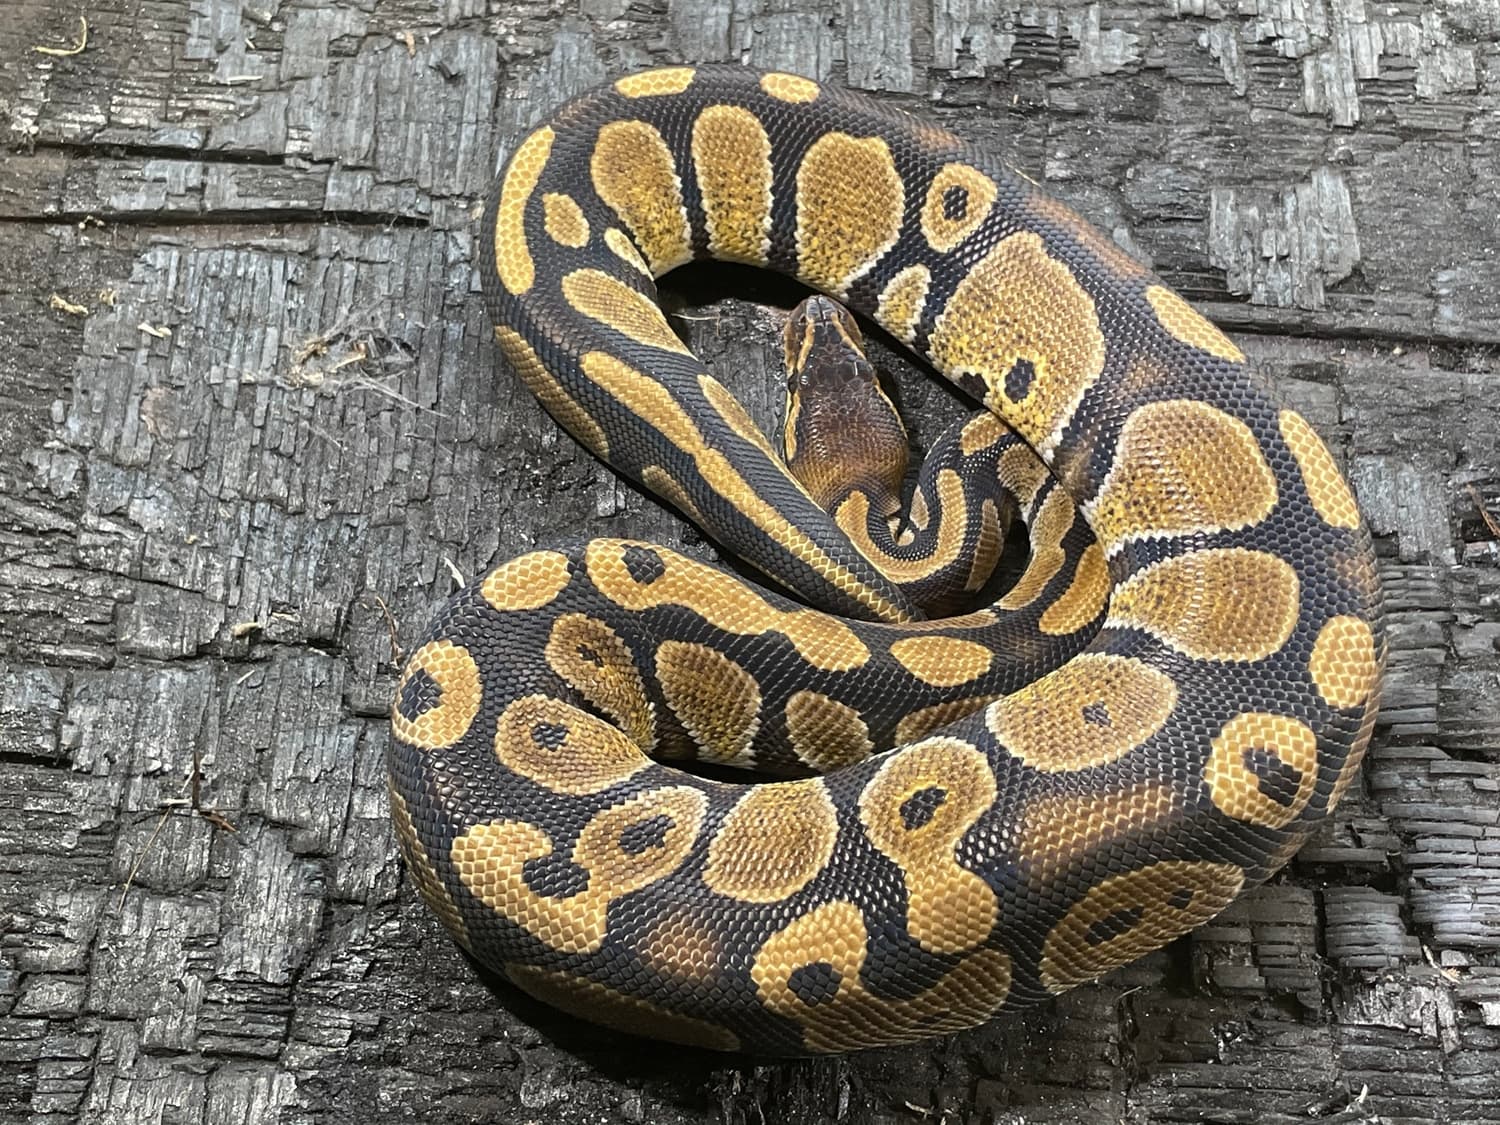 Mahogany Ball Python by Safari Pets